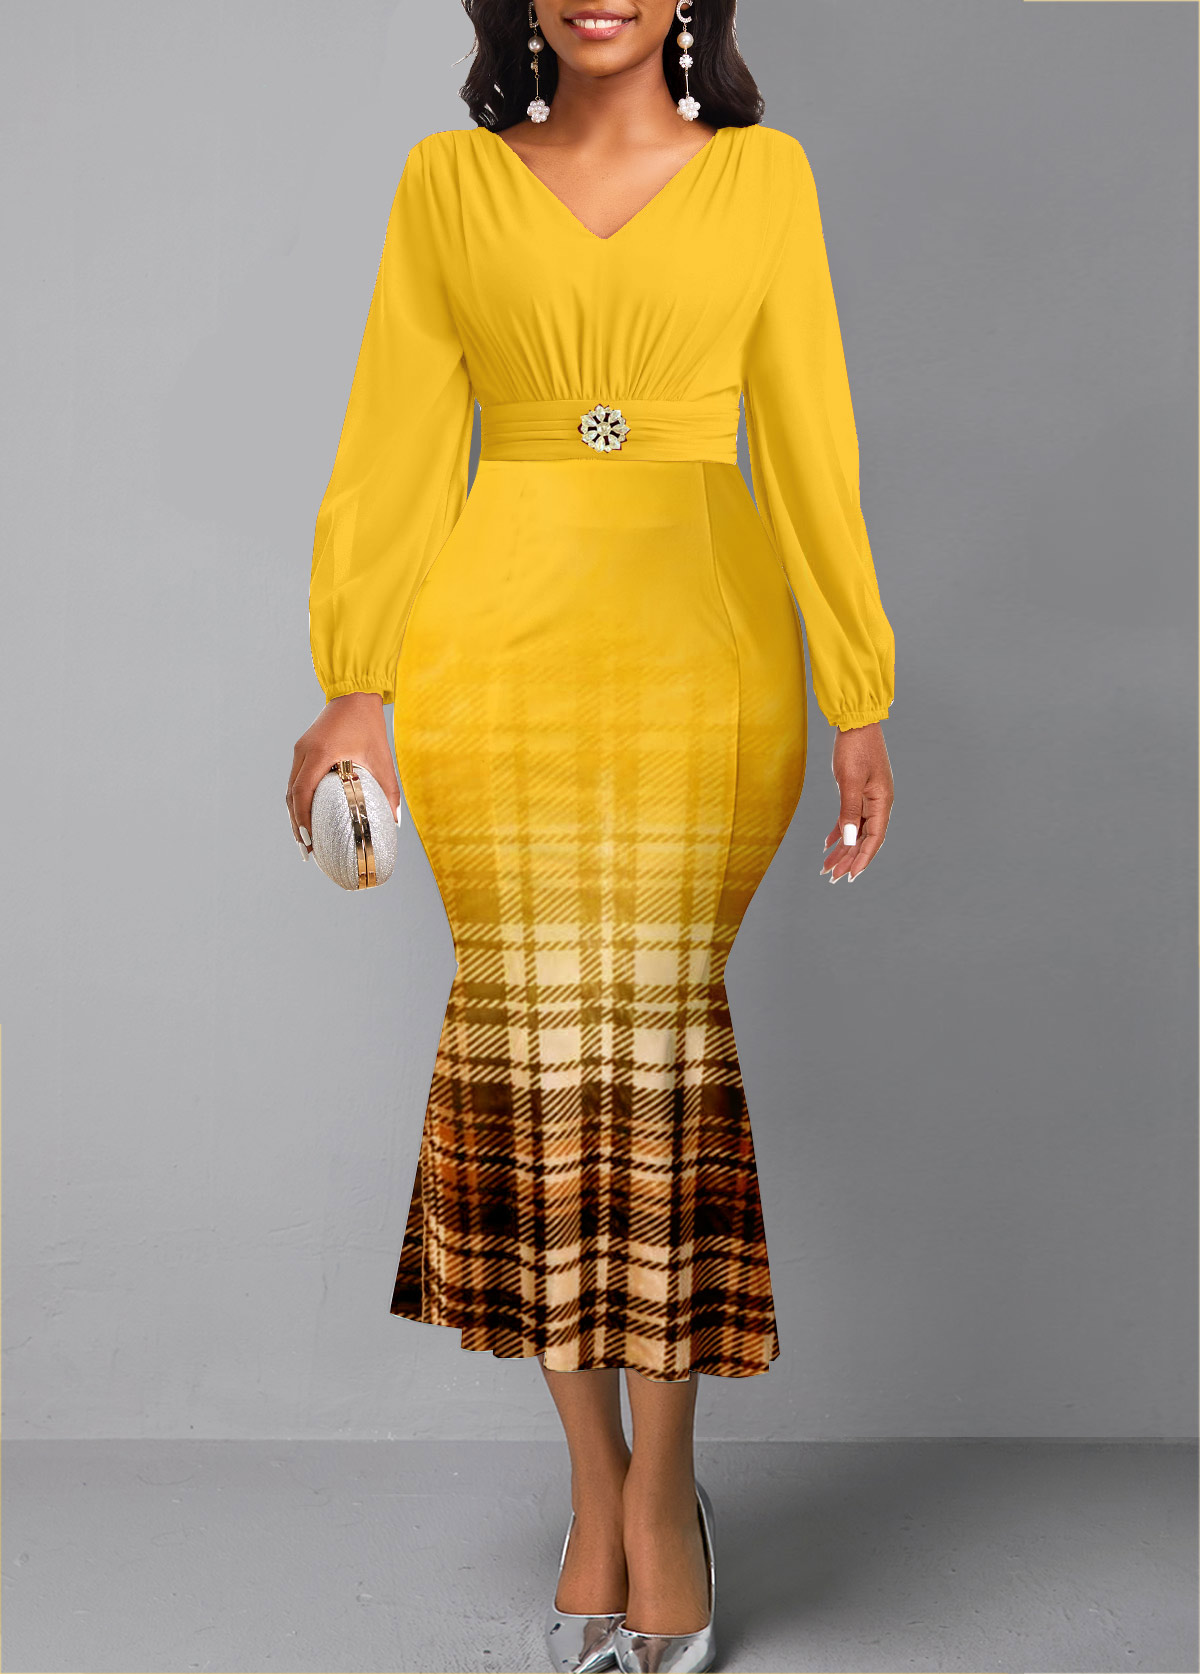 Plaid Yellow Long Sleeve V Neck Mermaid Dress